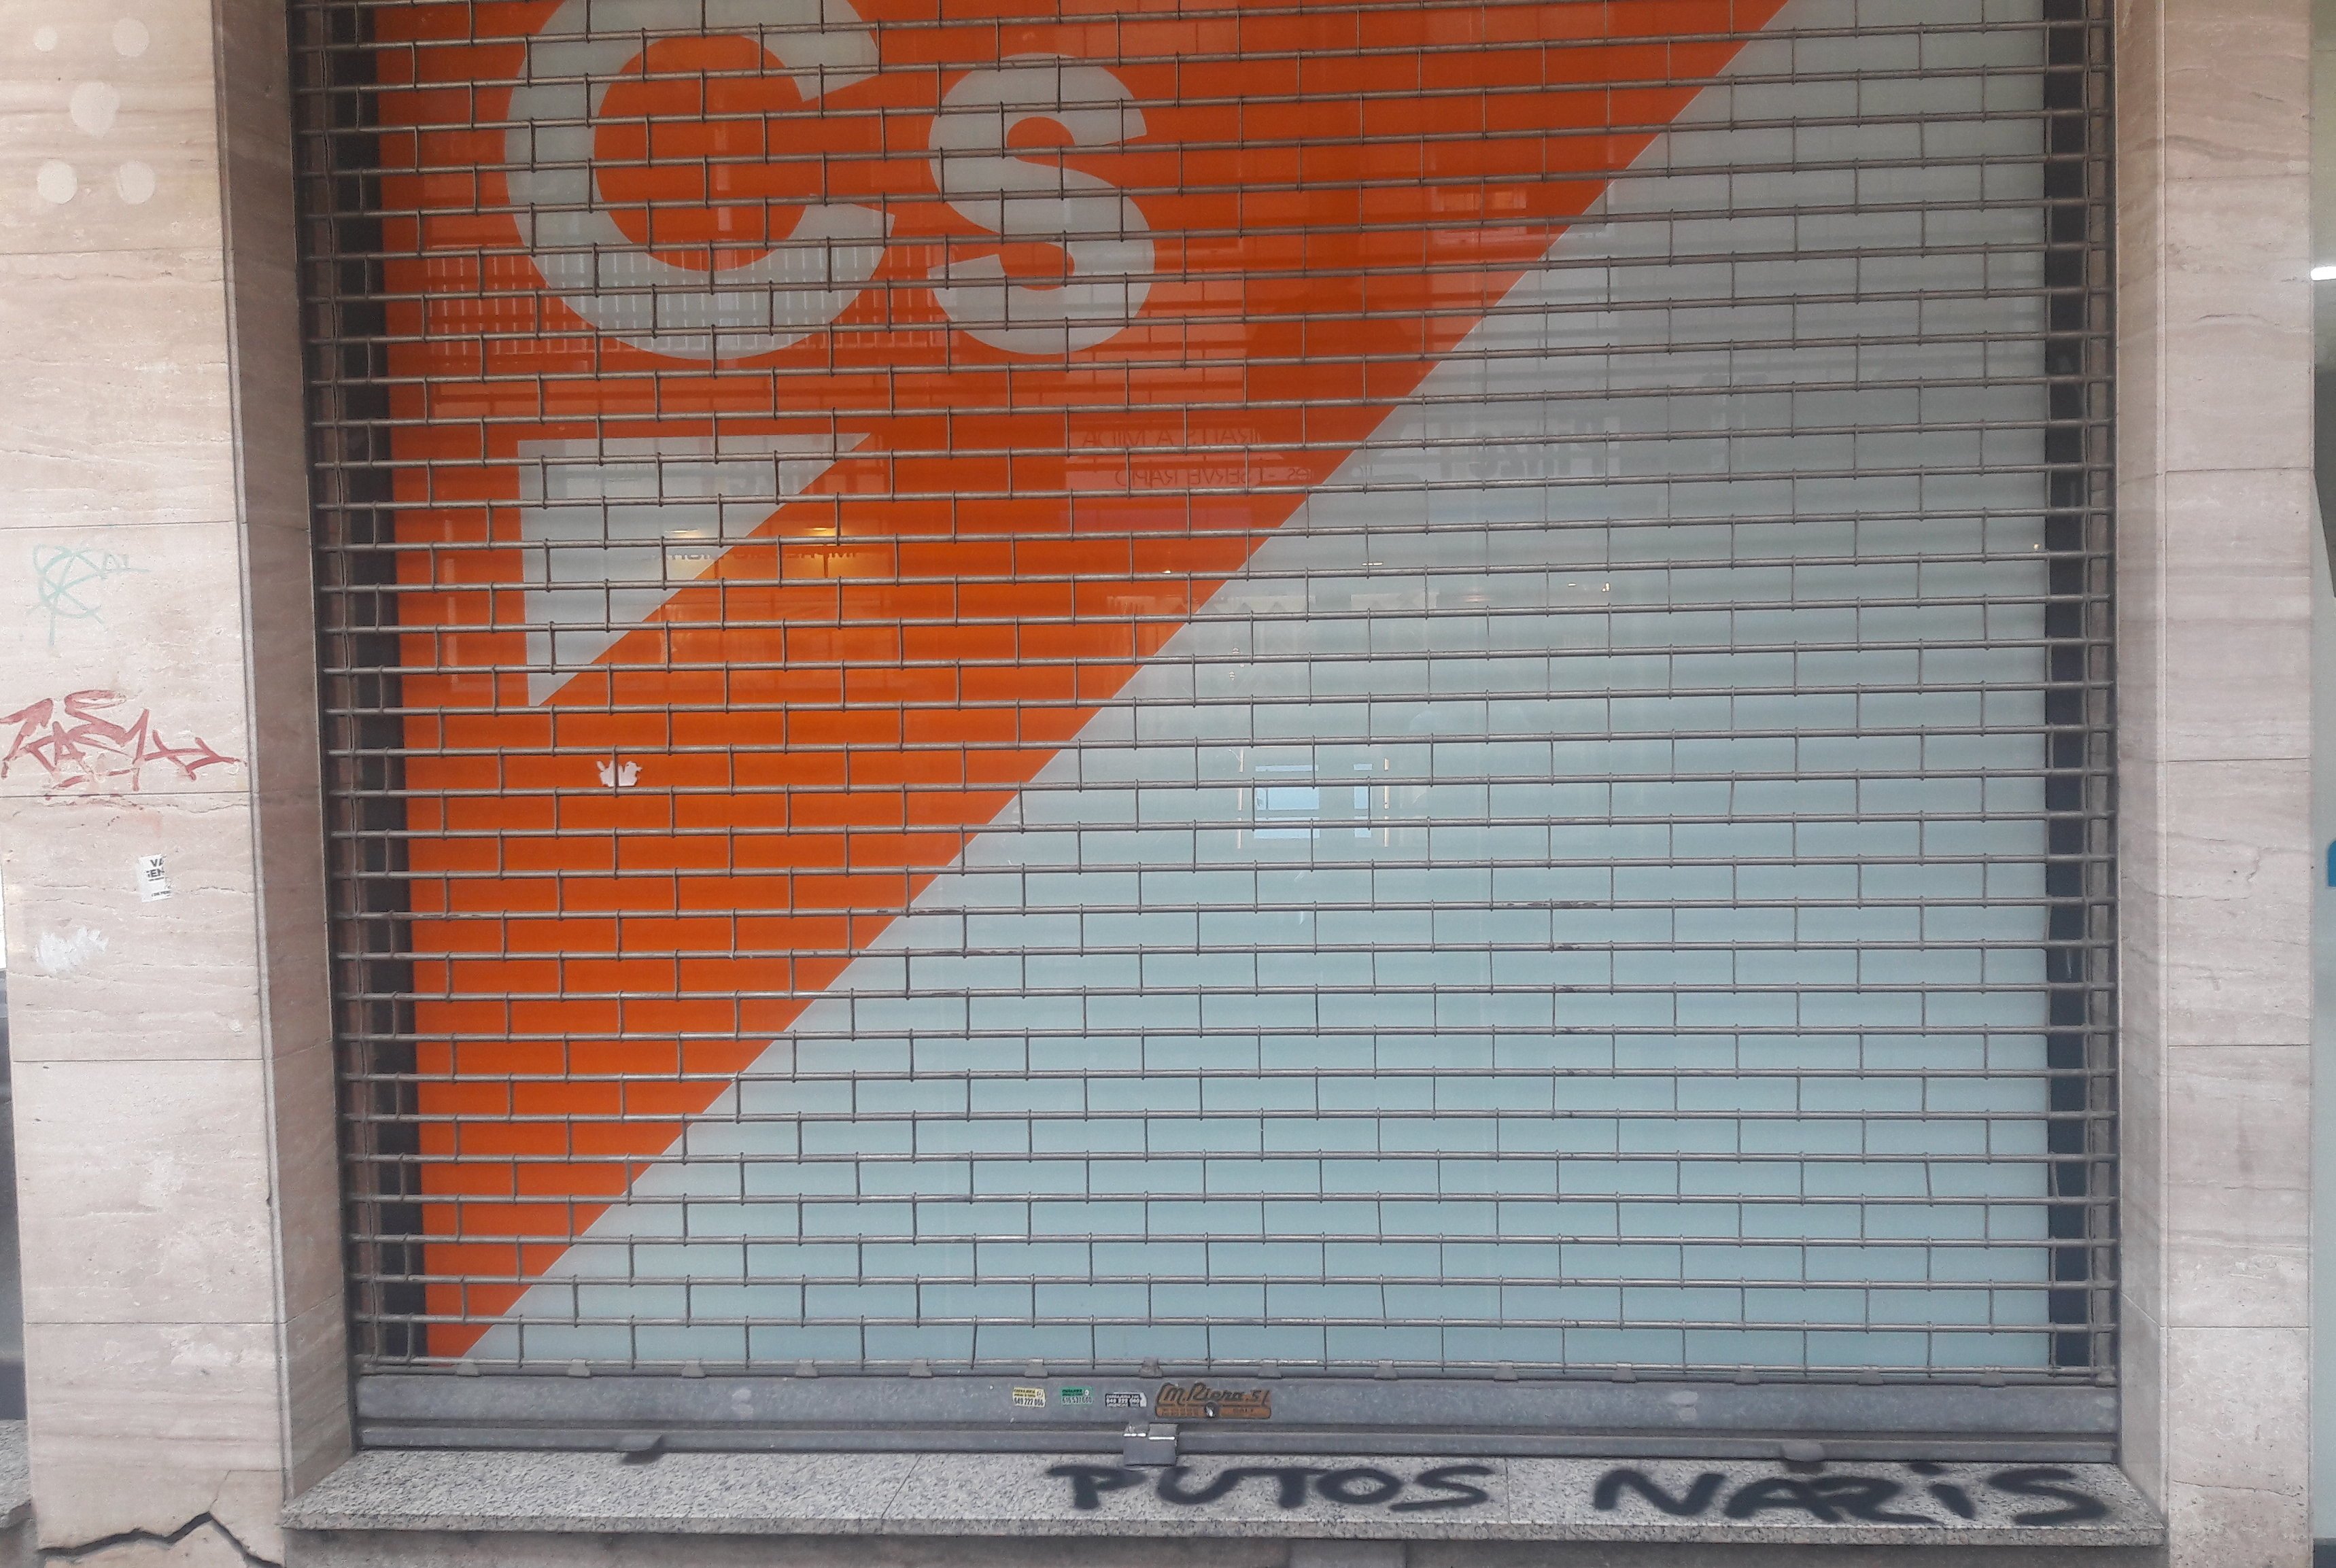 Apareixen pintades a la seu de Ciutadans a Girona: "nazis"